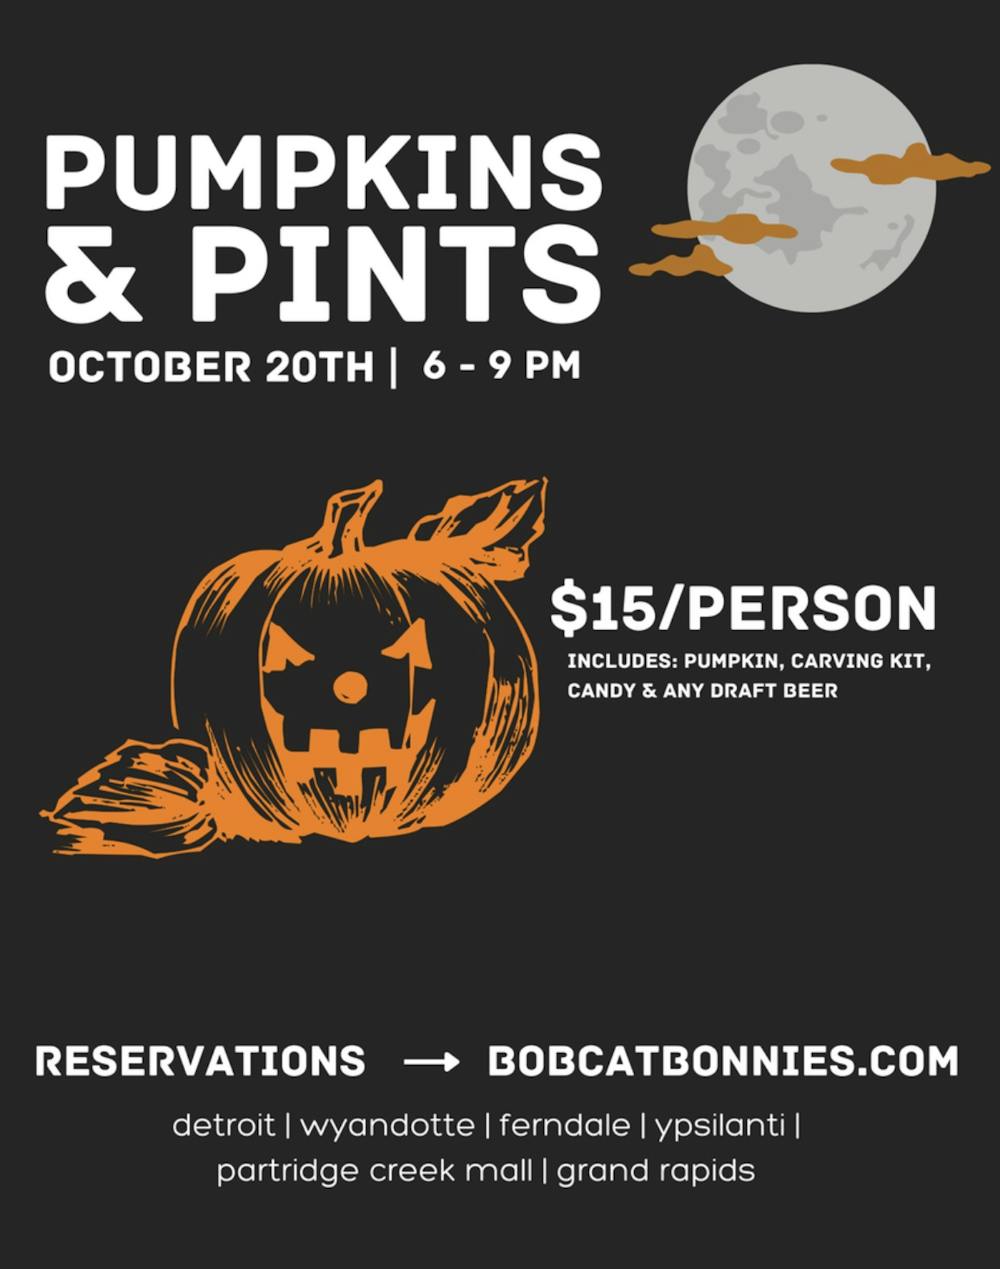 Local restaurant Bobcat Bonnie's hosting Pumpkins & Pints 